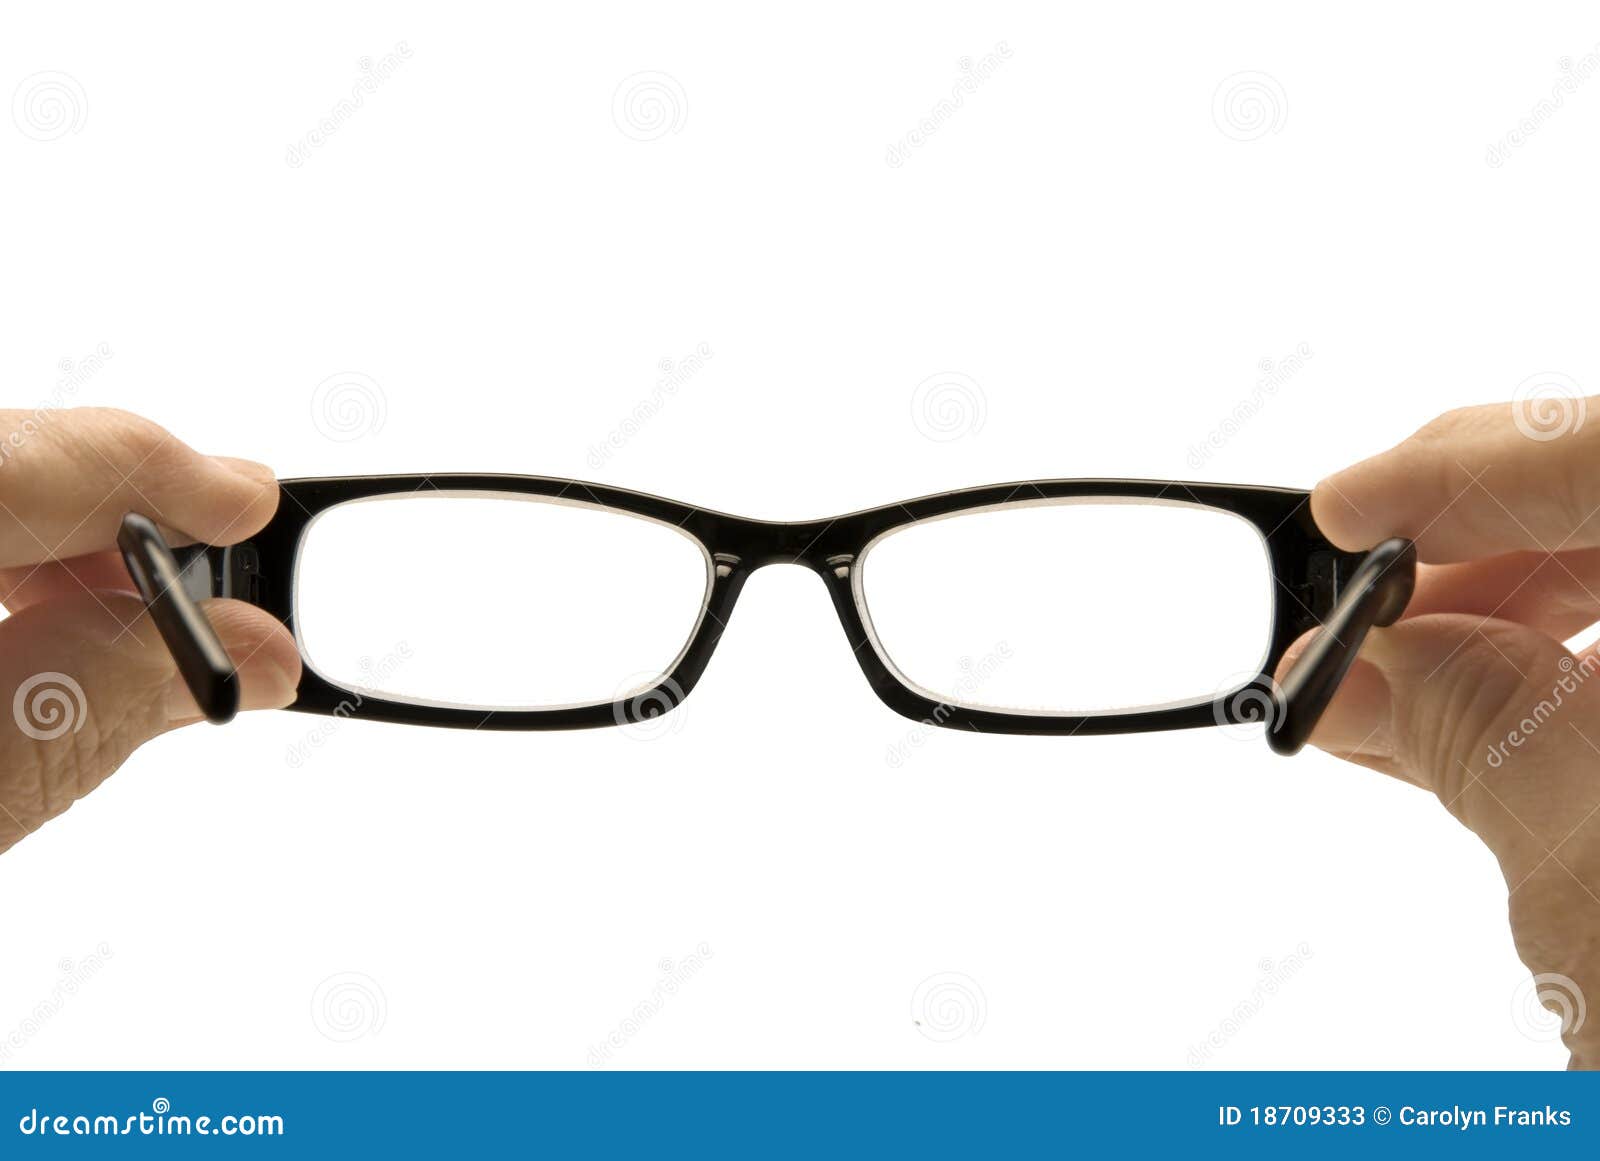 looking through eyeglasses